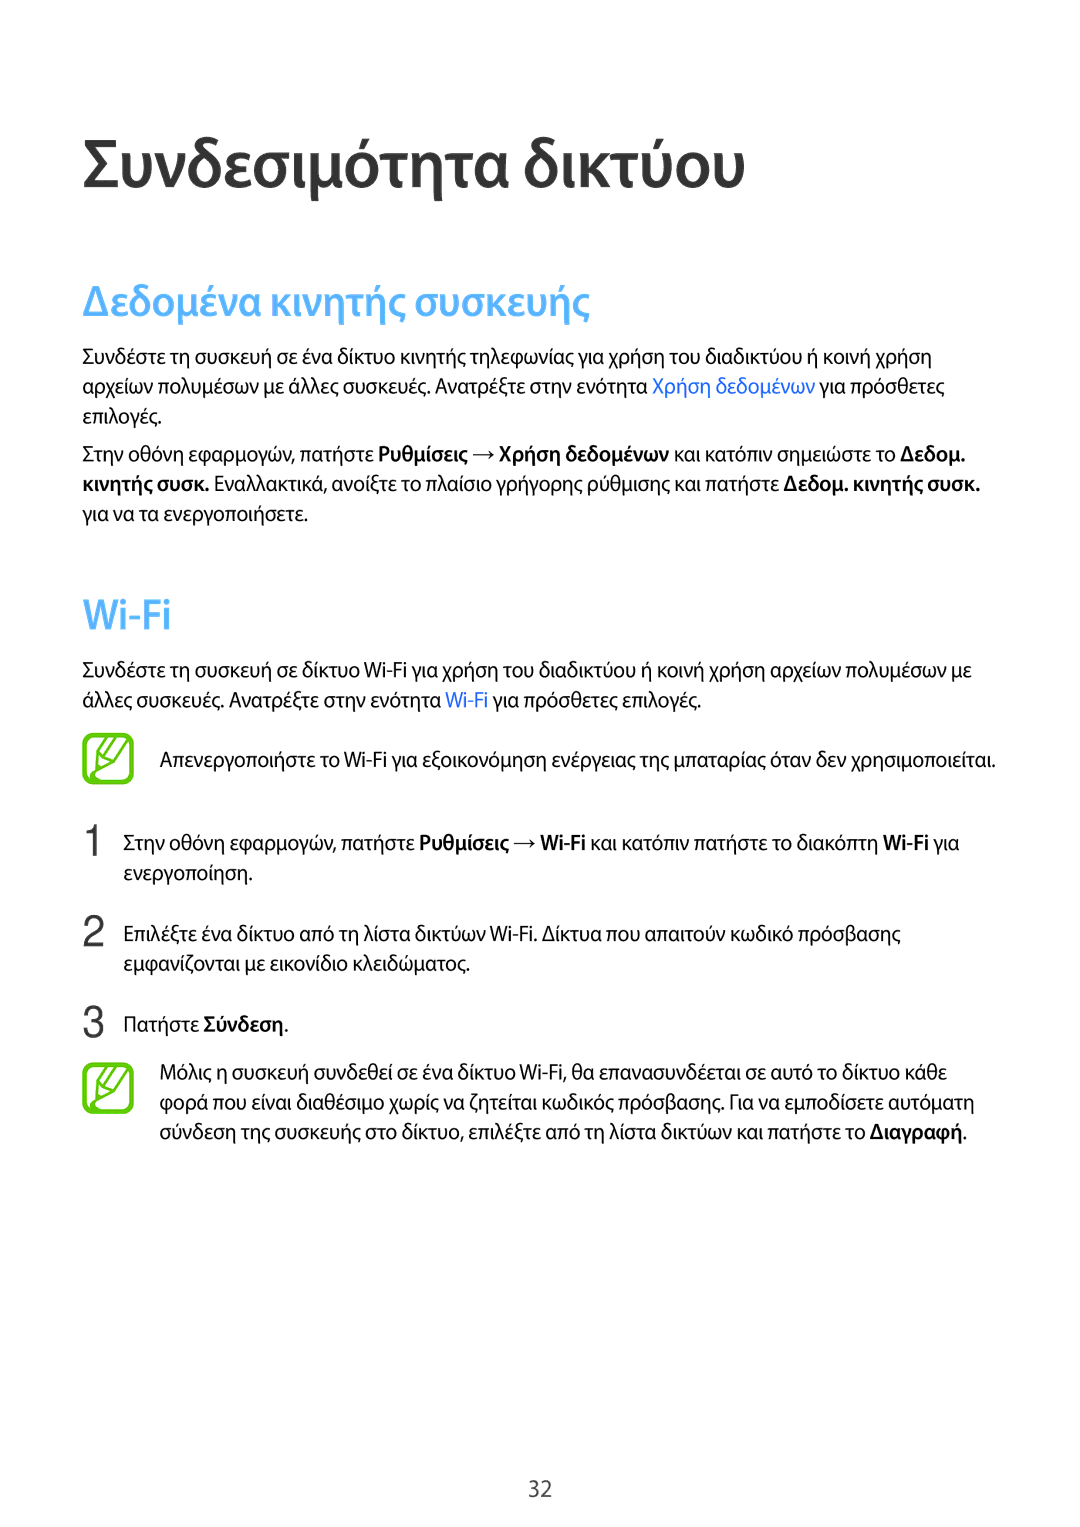 Samsung SM-T561NZWAEUR, SM-T561NZKAEUR manual Συνδεσιμότητα δικτύου, Δεδομένα κινητής συσκευής, Wi-Fi 